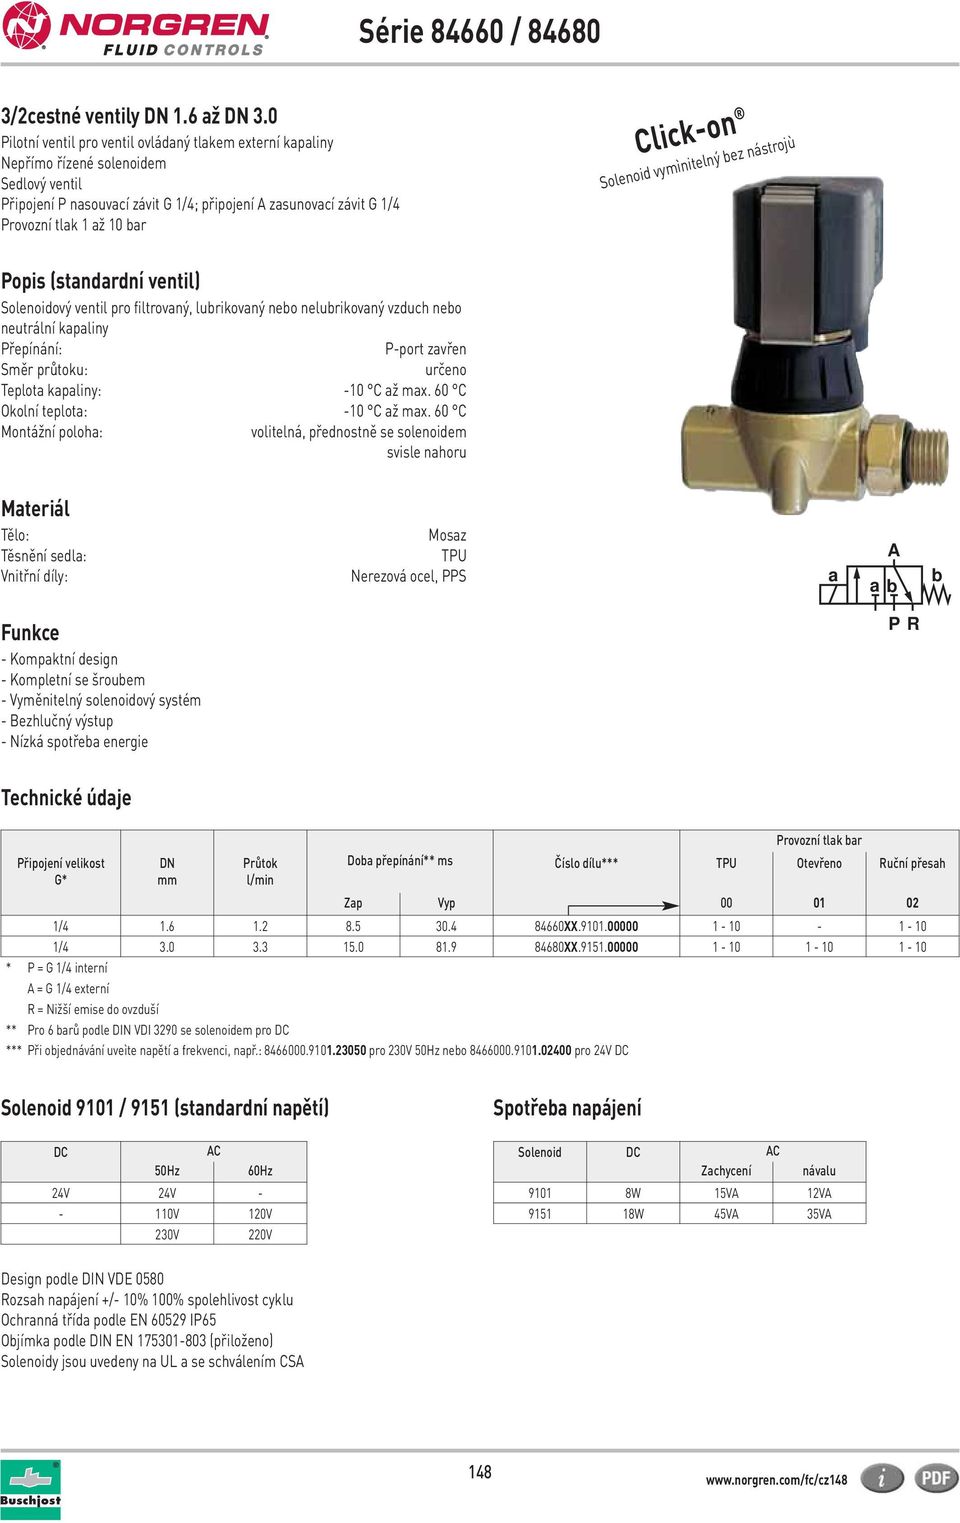 Solenoid vymìnitelný bez nástrojù opis (standardní ventil) Solenoidový ventil pro filtrovaný, lubrikovaný nebo nelubrikovaný vzduch nebo neutrální kapaliny řepínání: -port zavřen Směr průtoku: určeno